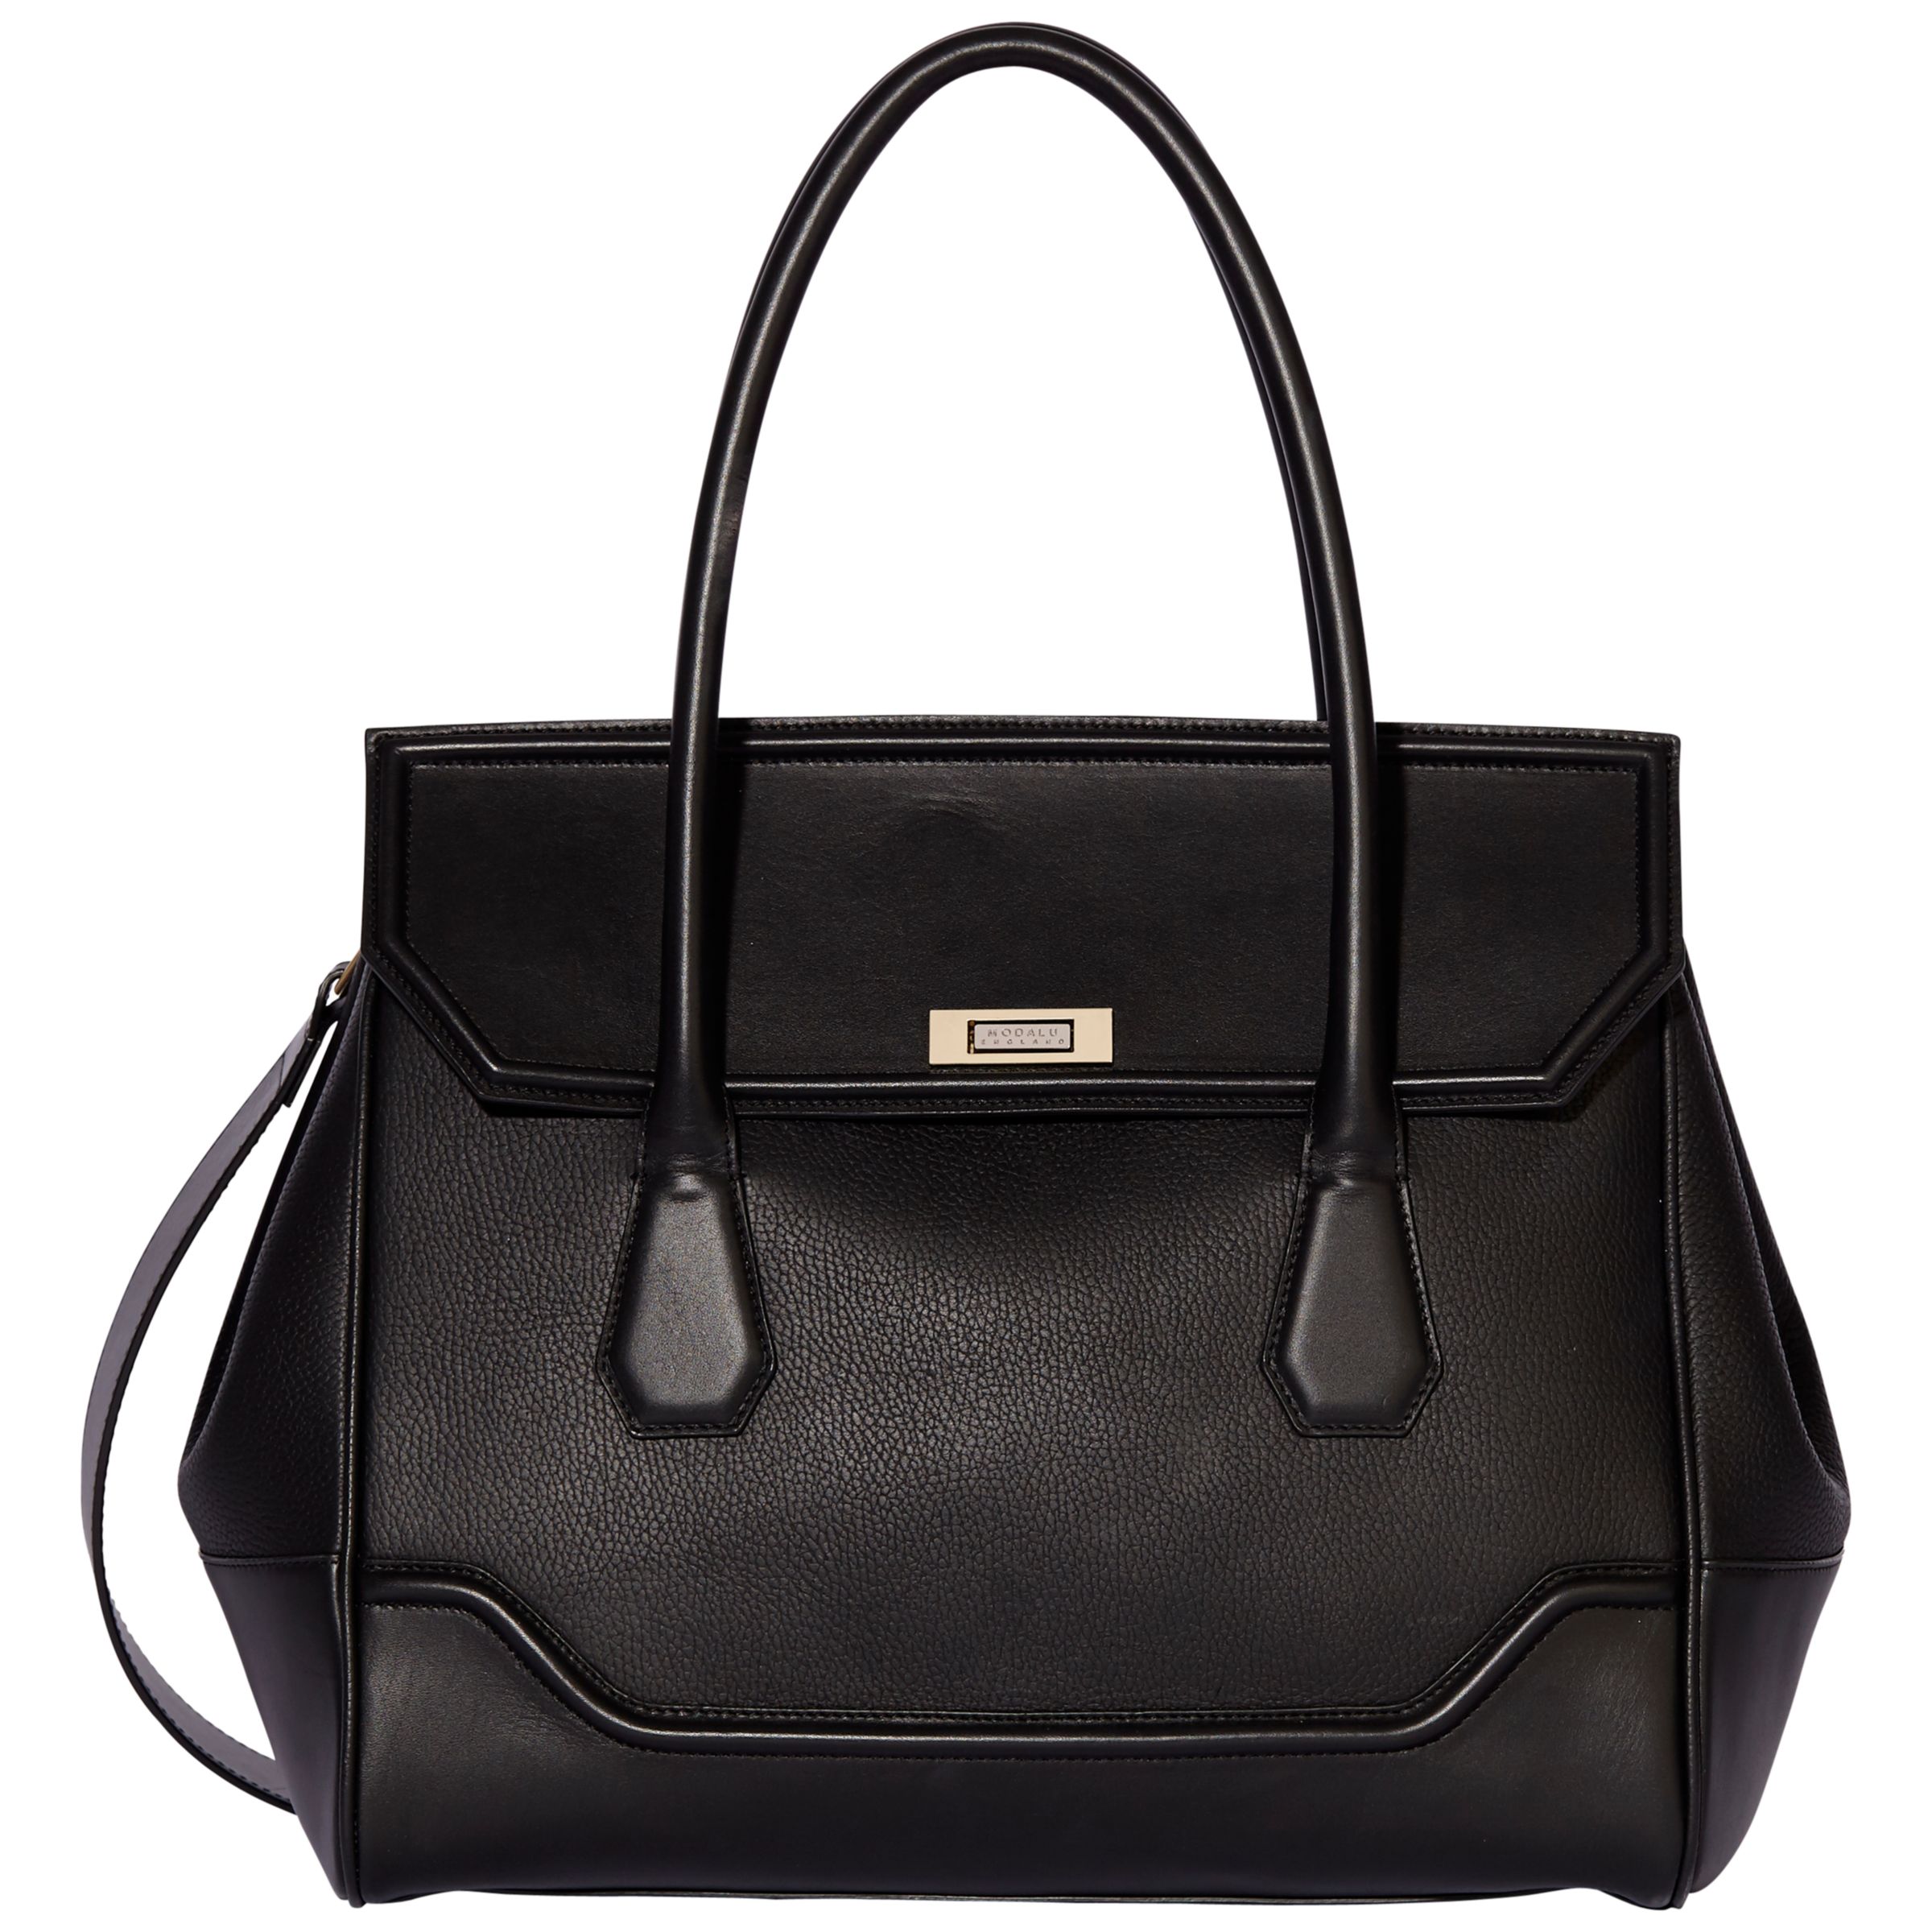 Modalu Hemingway Leather Large Grab Bag, Black at John Lewis & Partners